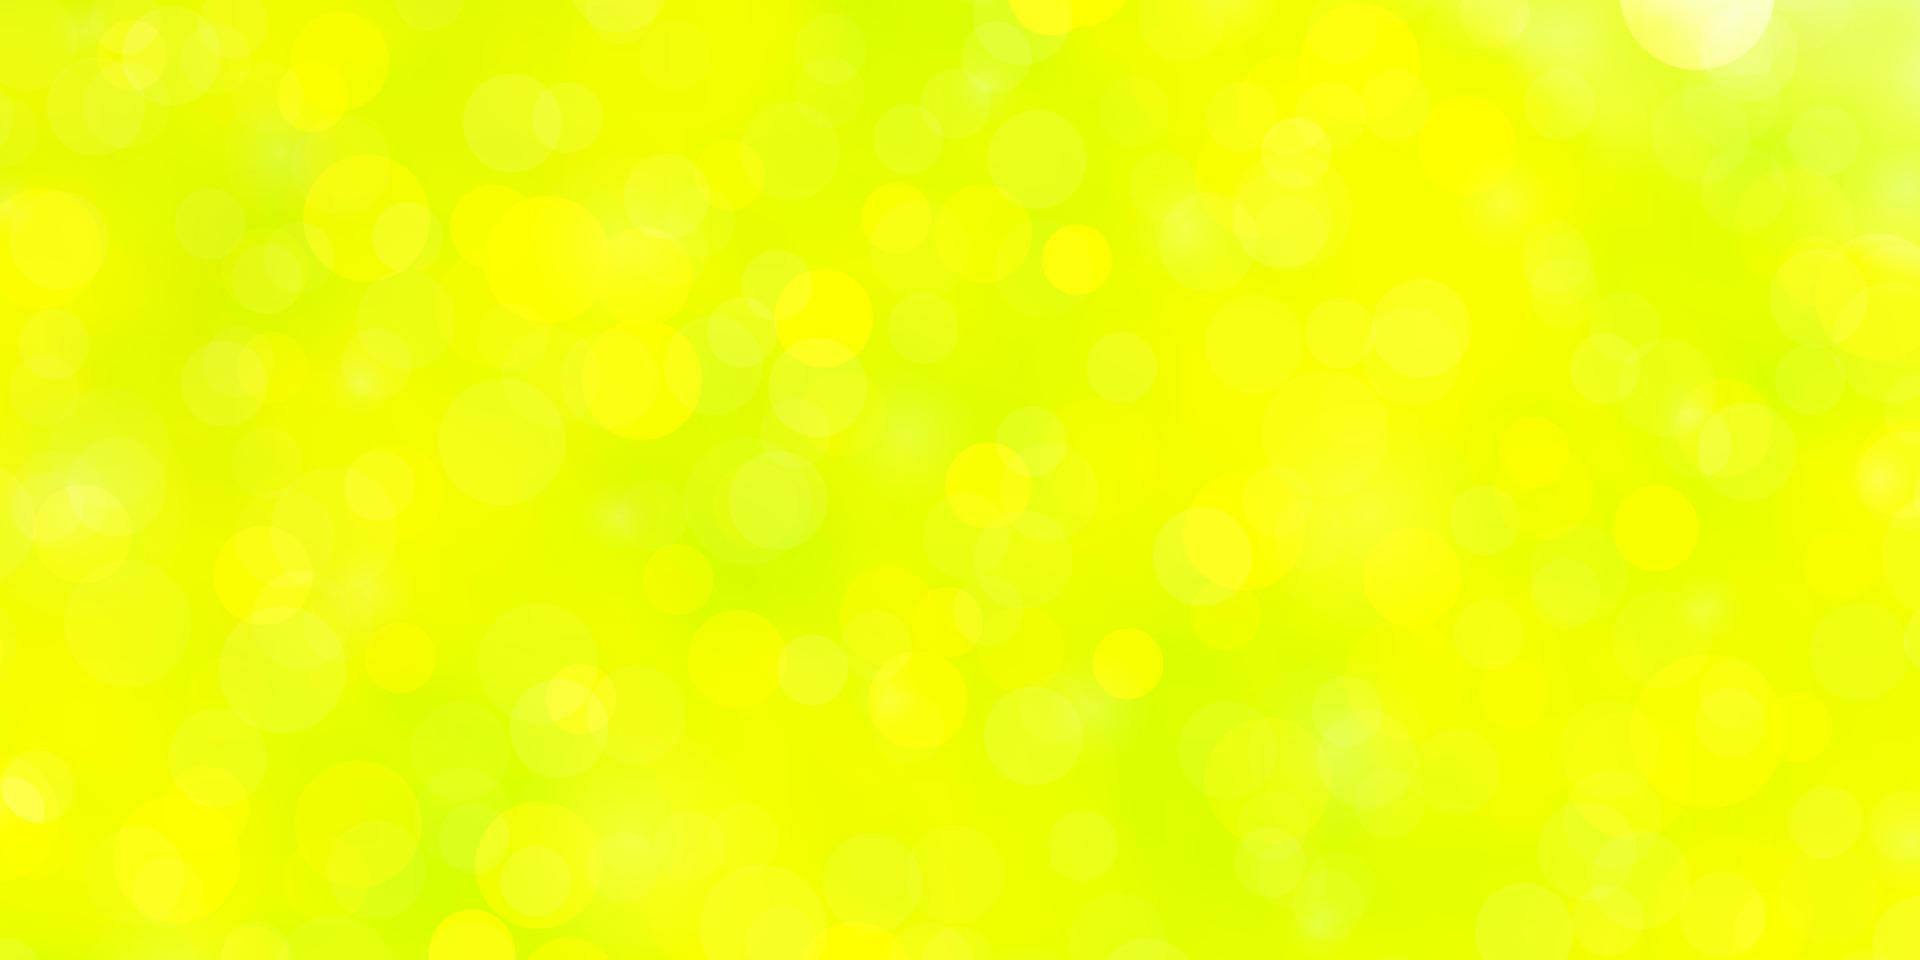 Fondo de vector verde claro, amarillo con círculos.